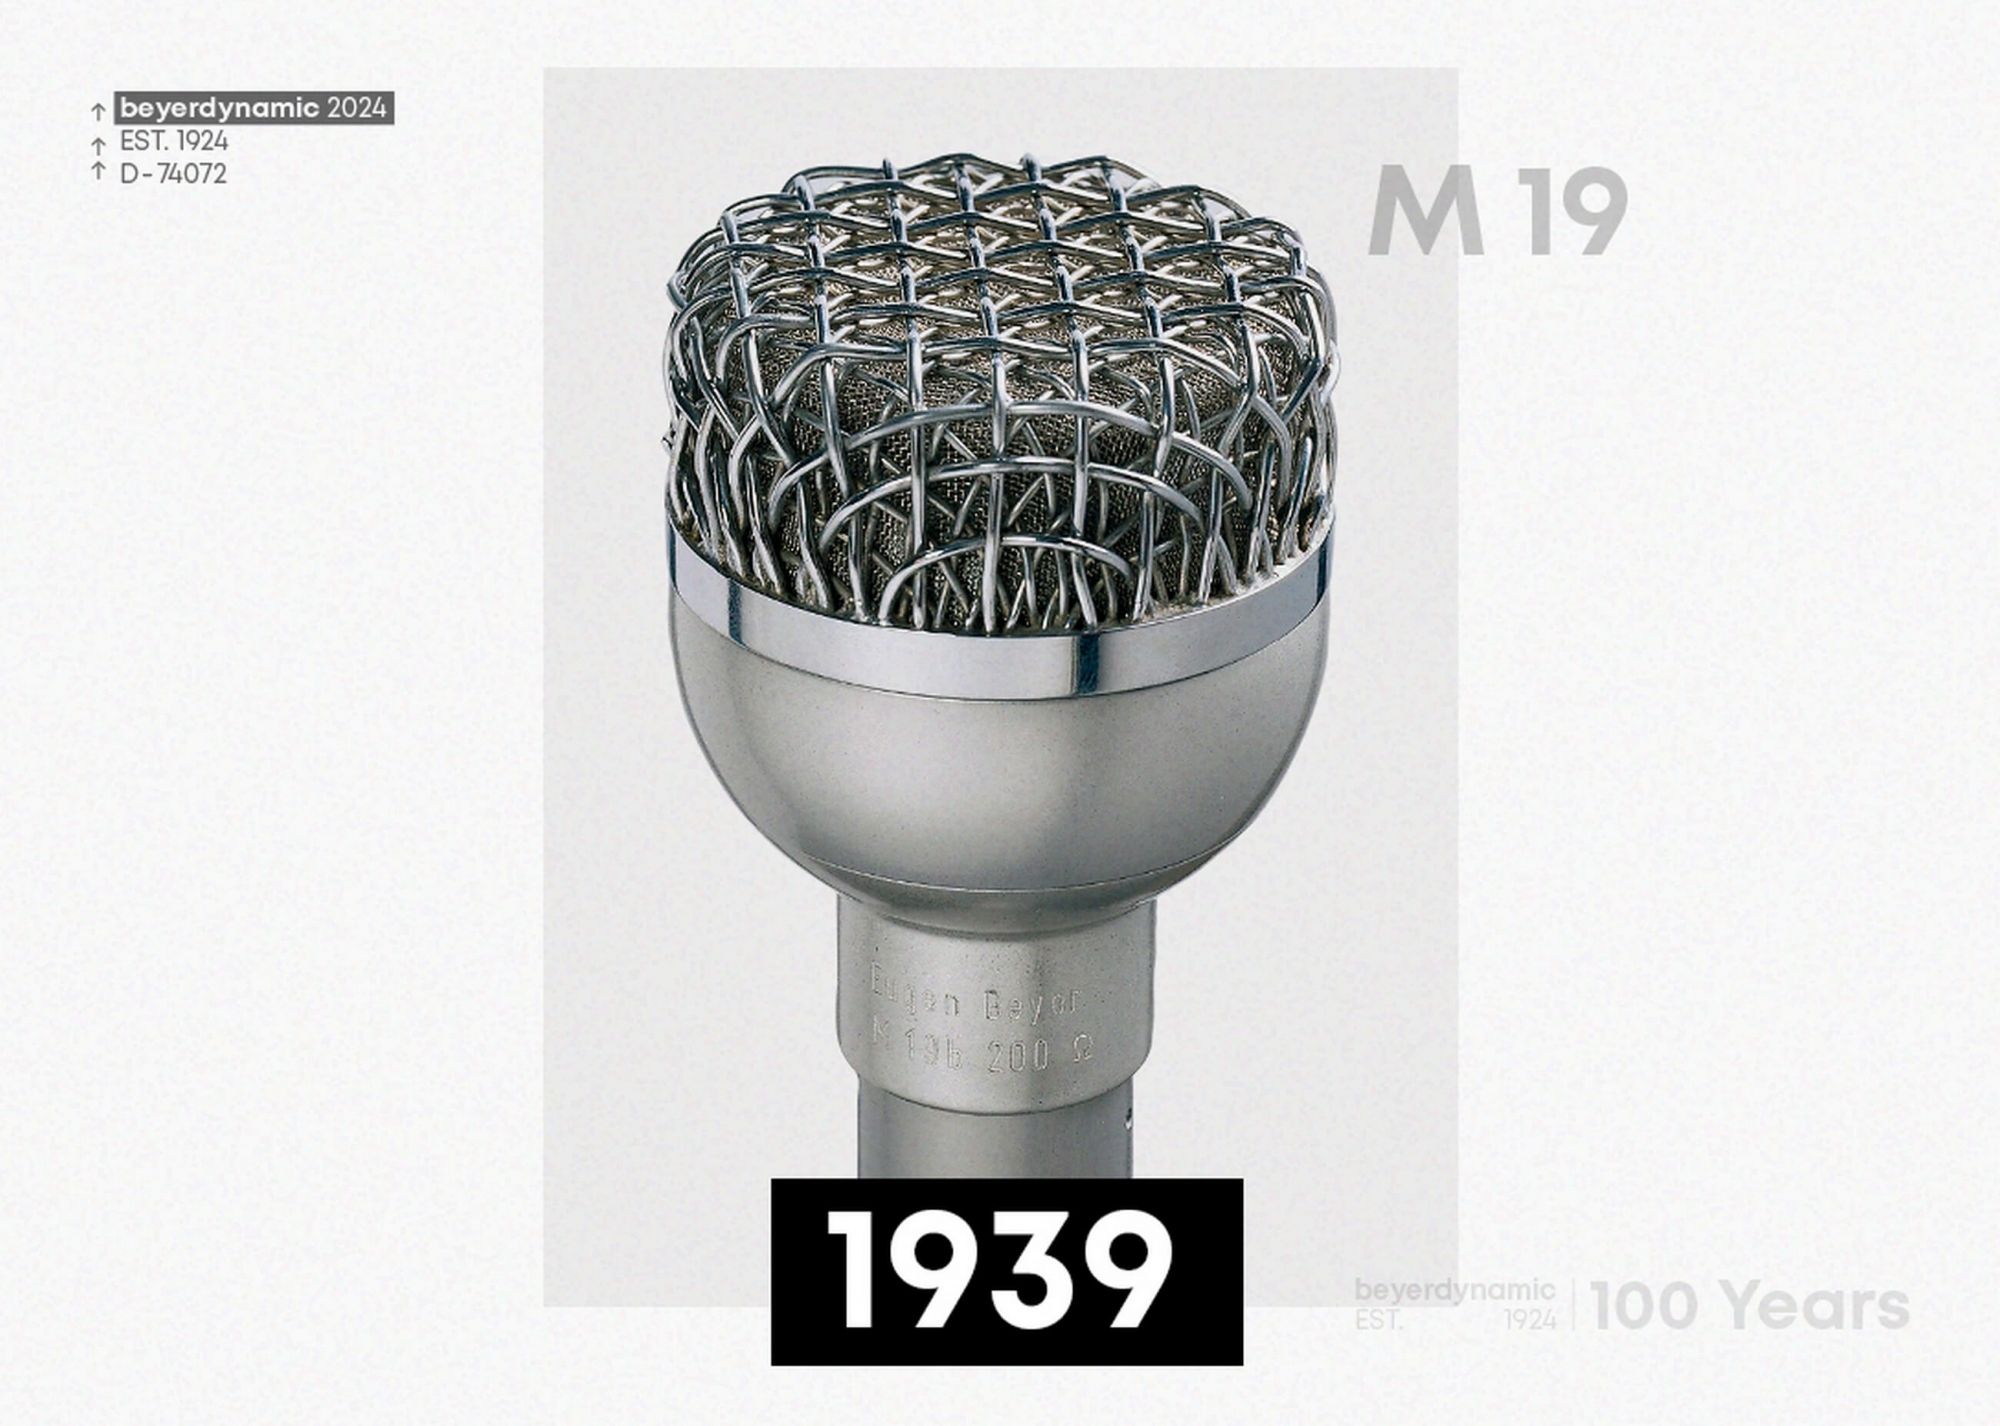 Beyerdynamic M 19 mikrofon 1939-ben